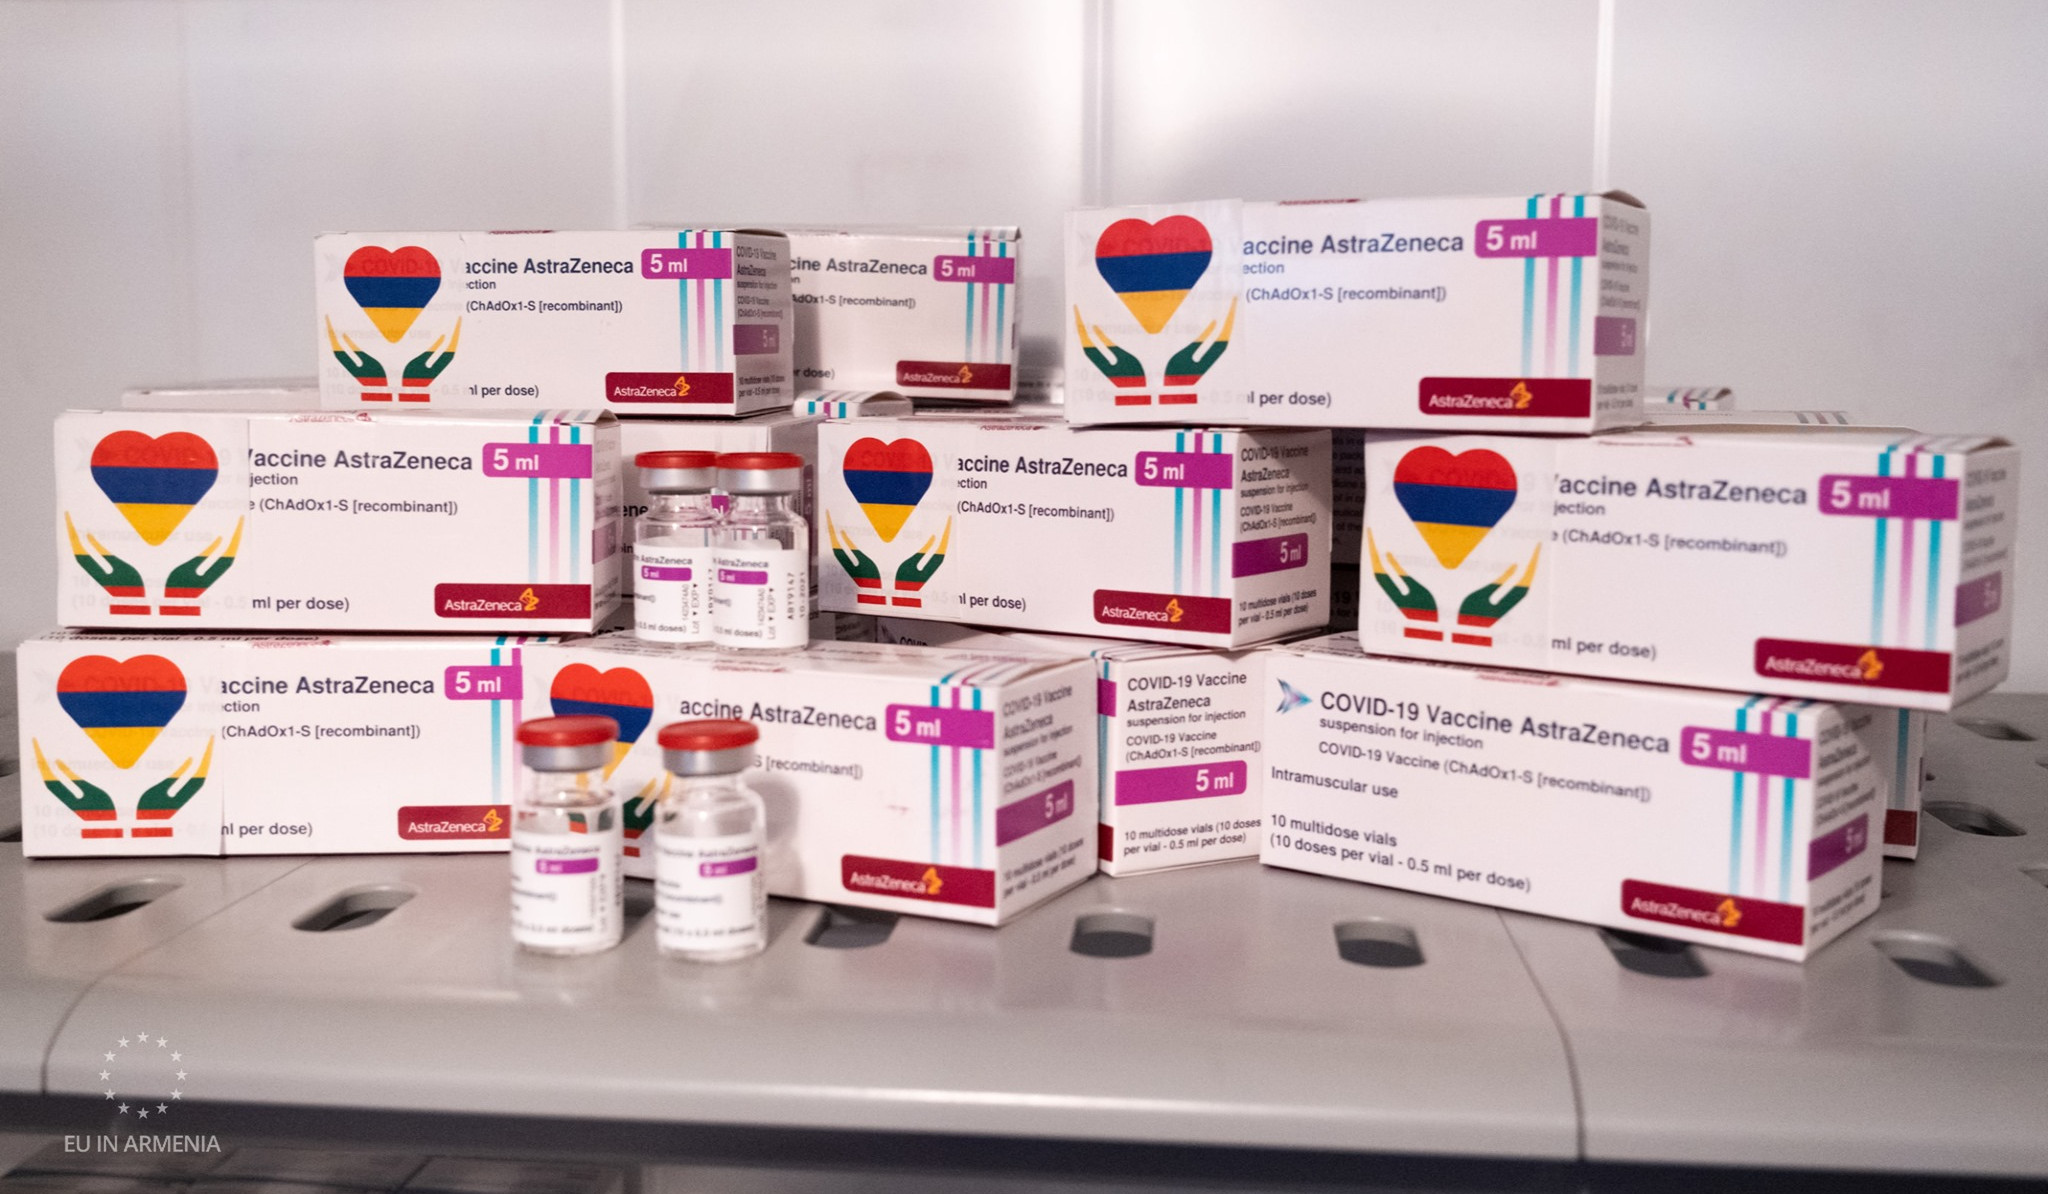 Lithuania donates 27,500 doses of AstraZeneca vaccine to Armenia